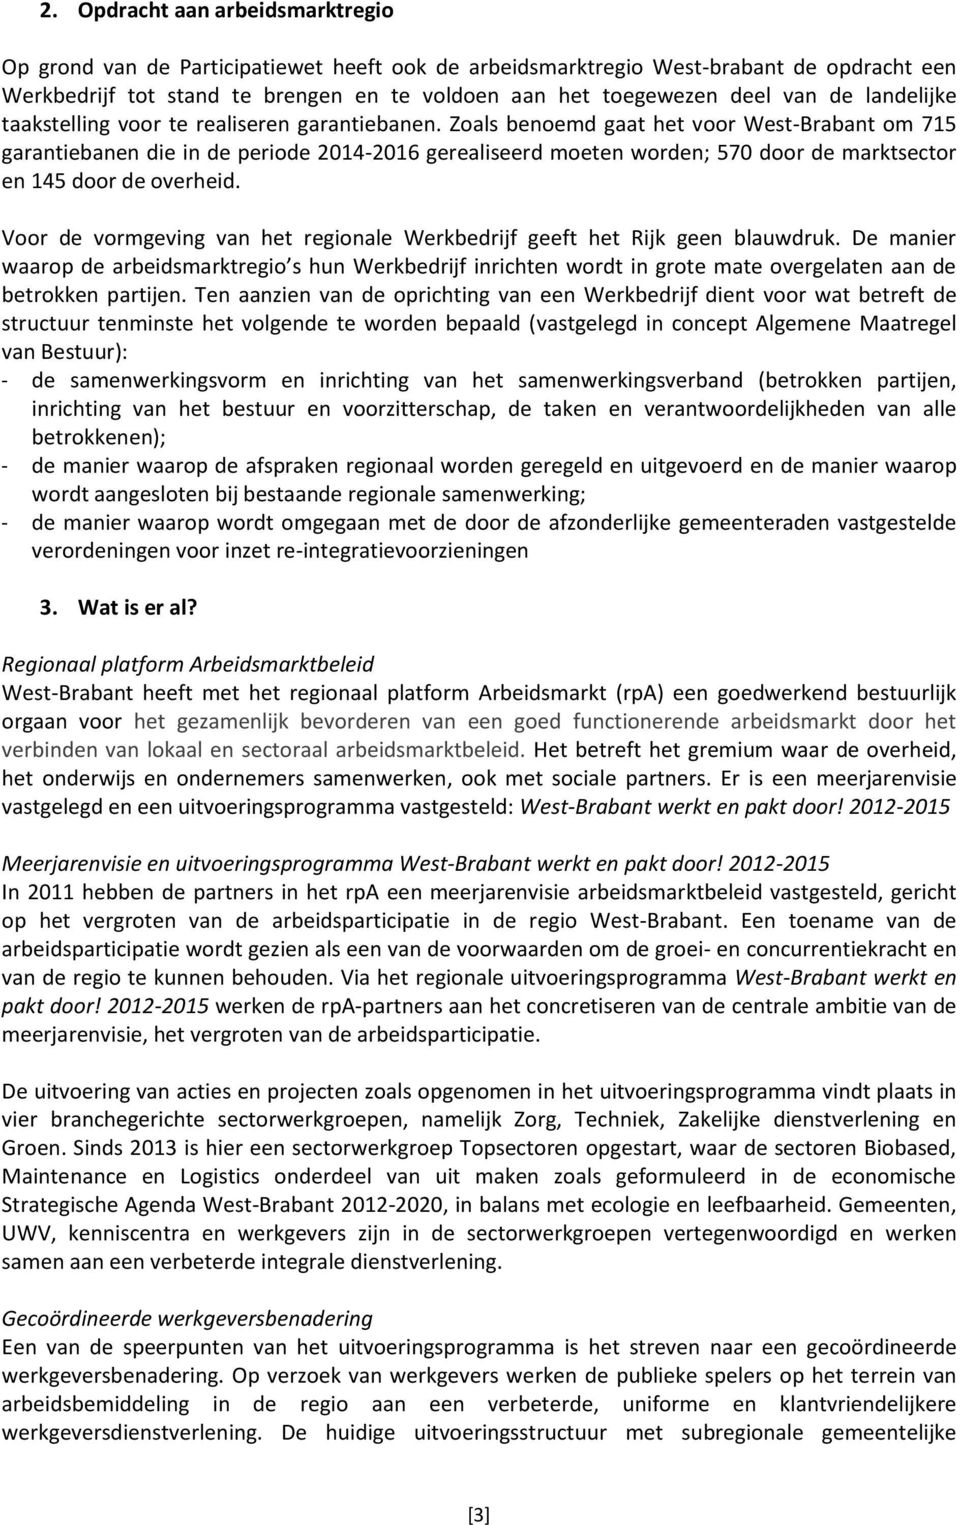 Zoals benoemd gaat het voor West-Brabant om 715 garantiebanen die in de periode 2014-2016 gerealiseerd moeten worden; 570 door de marktsector en 145 door de overheid.